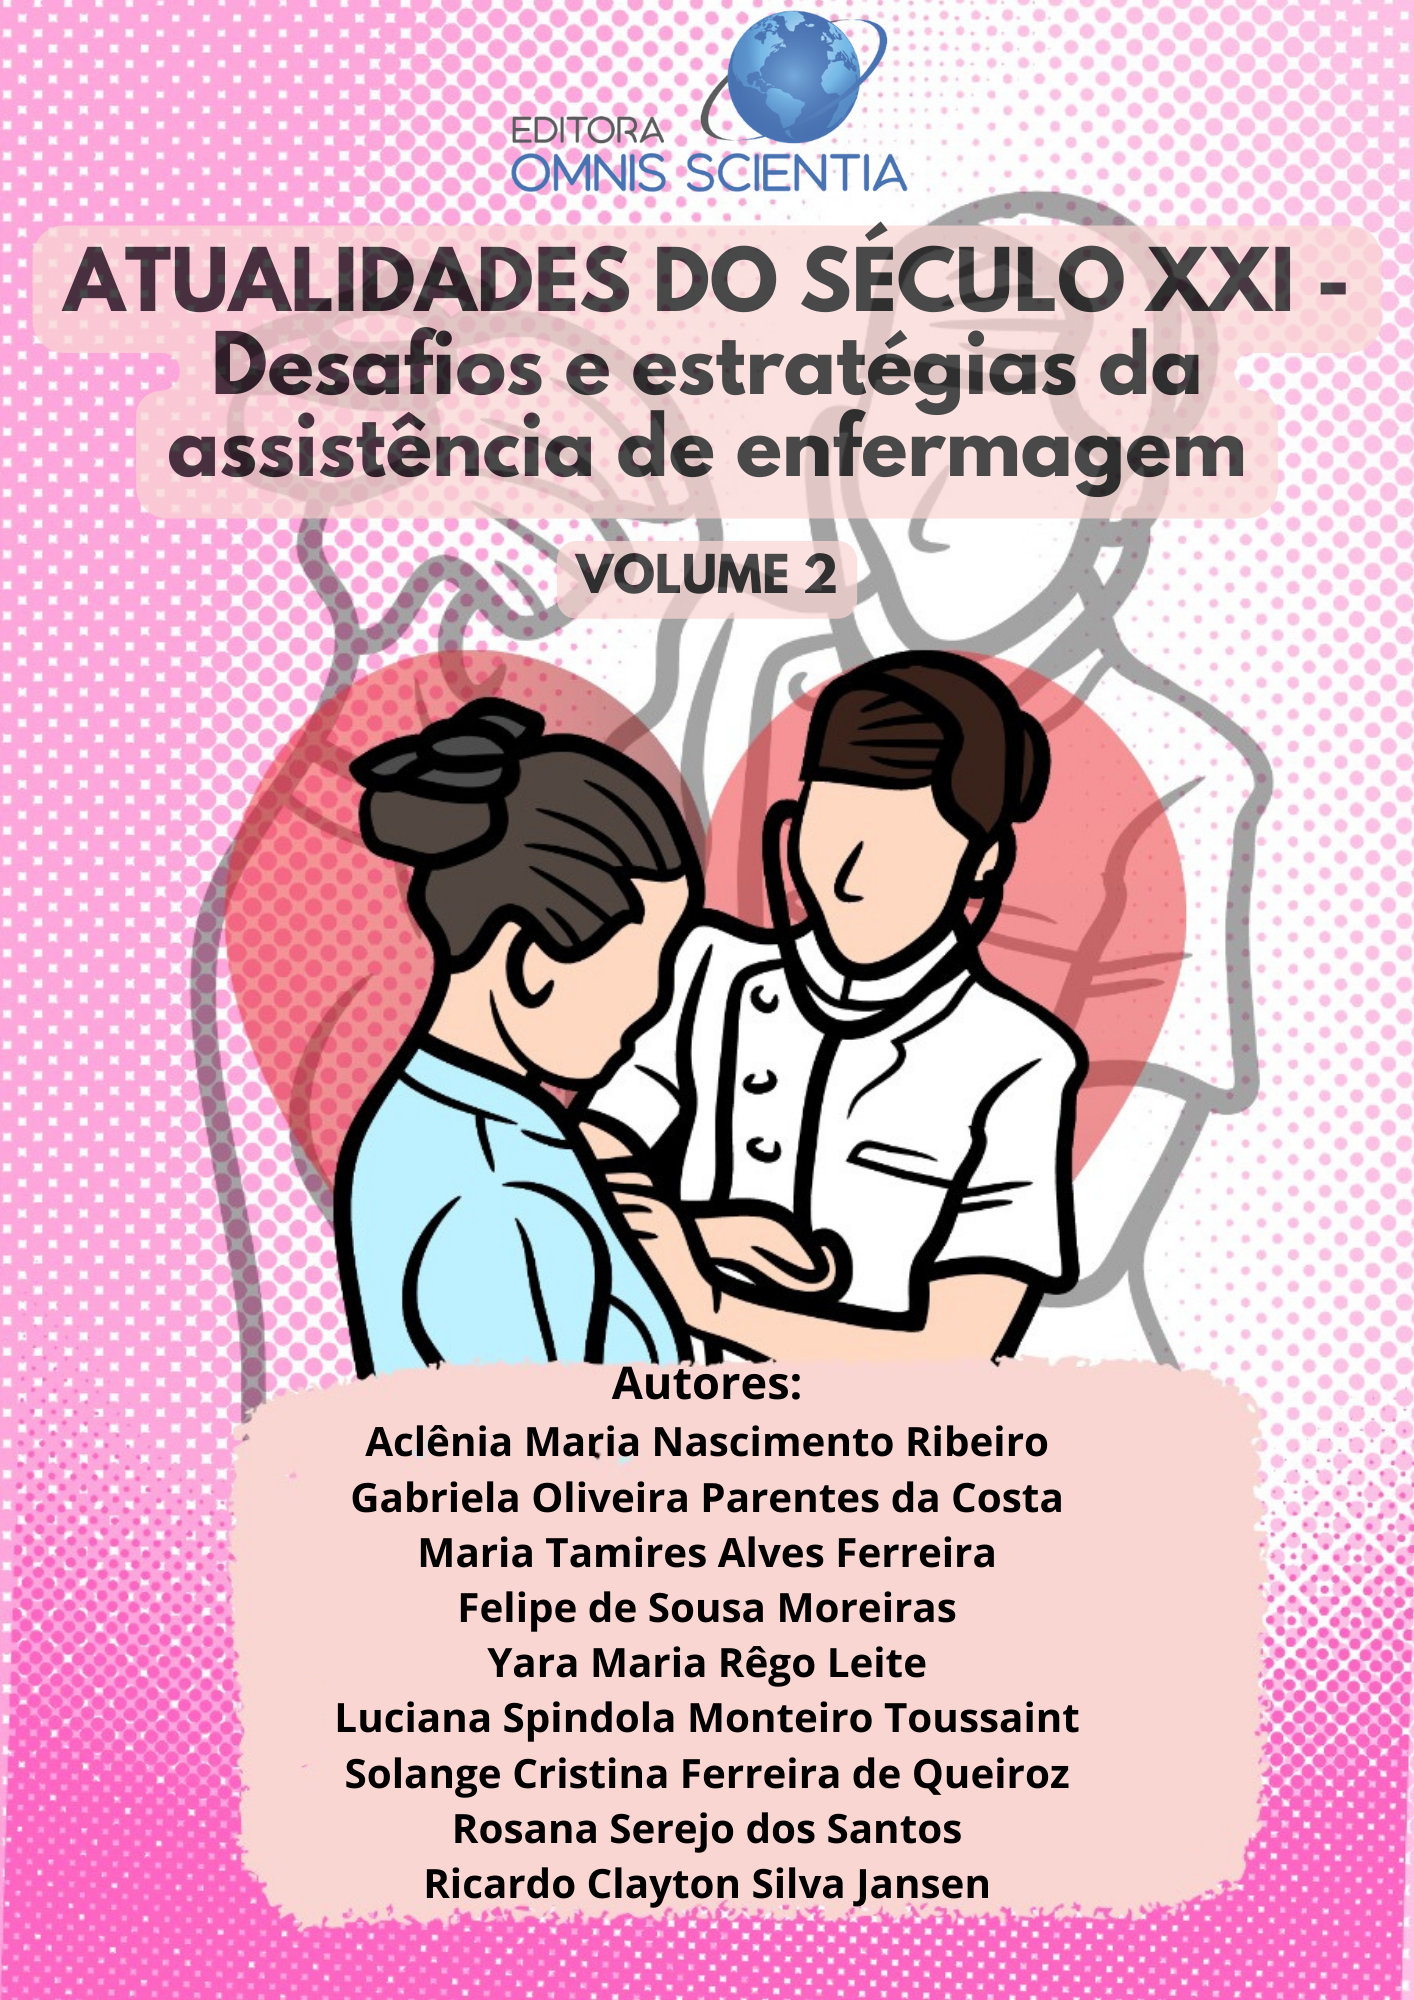 ATUALIDADES DO SÉCULO XXI – Desafios e estratégias da assistência de enfermagem